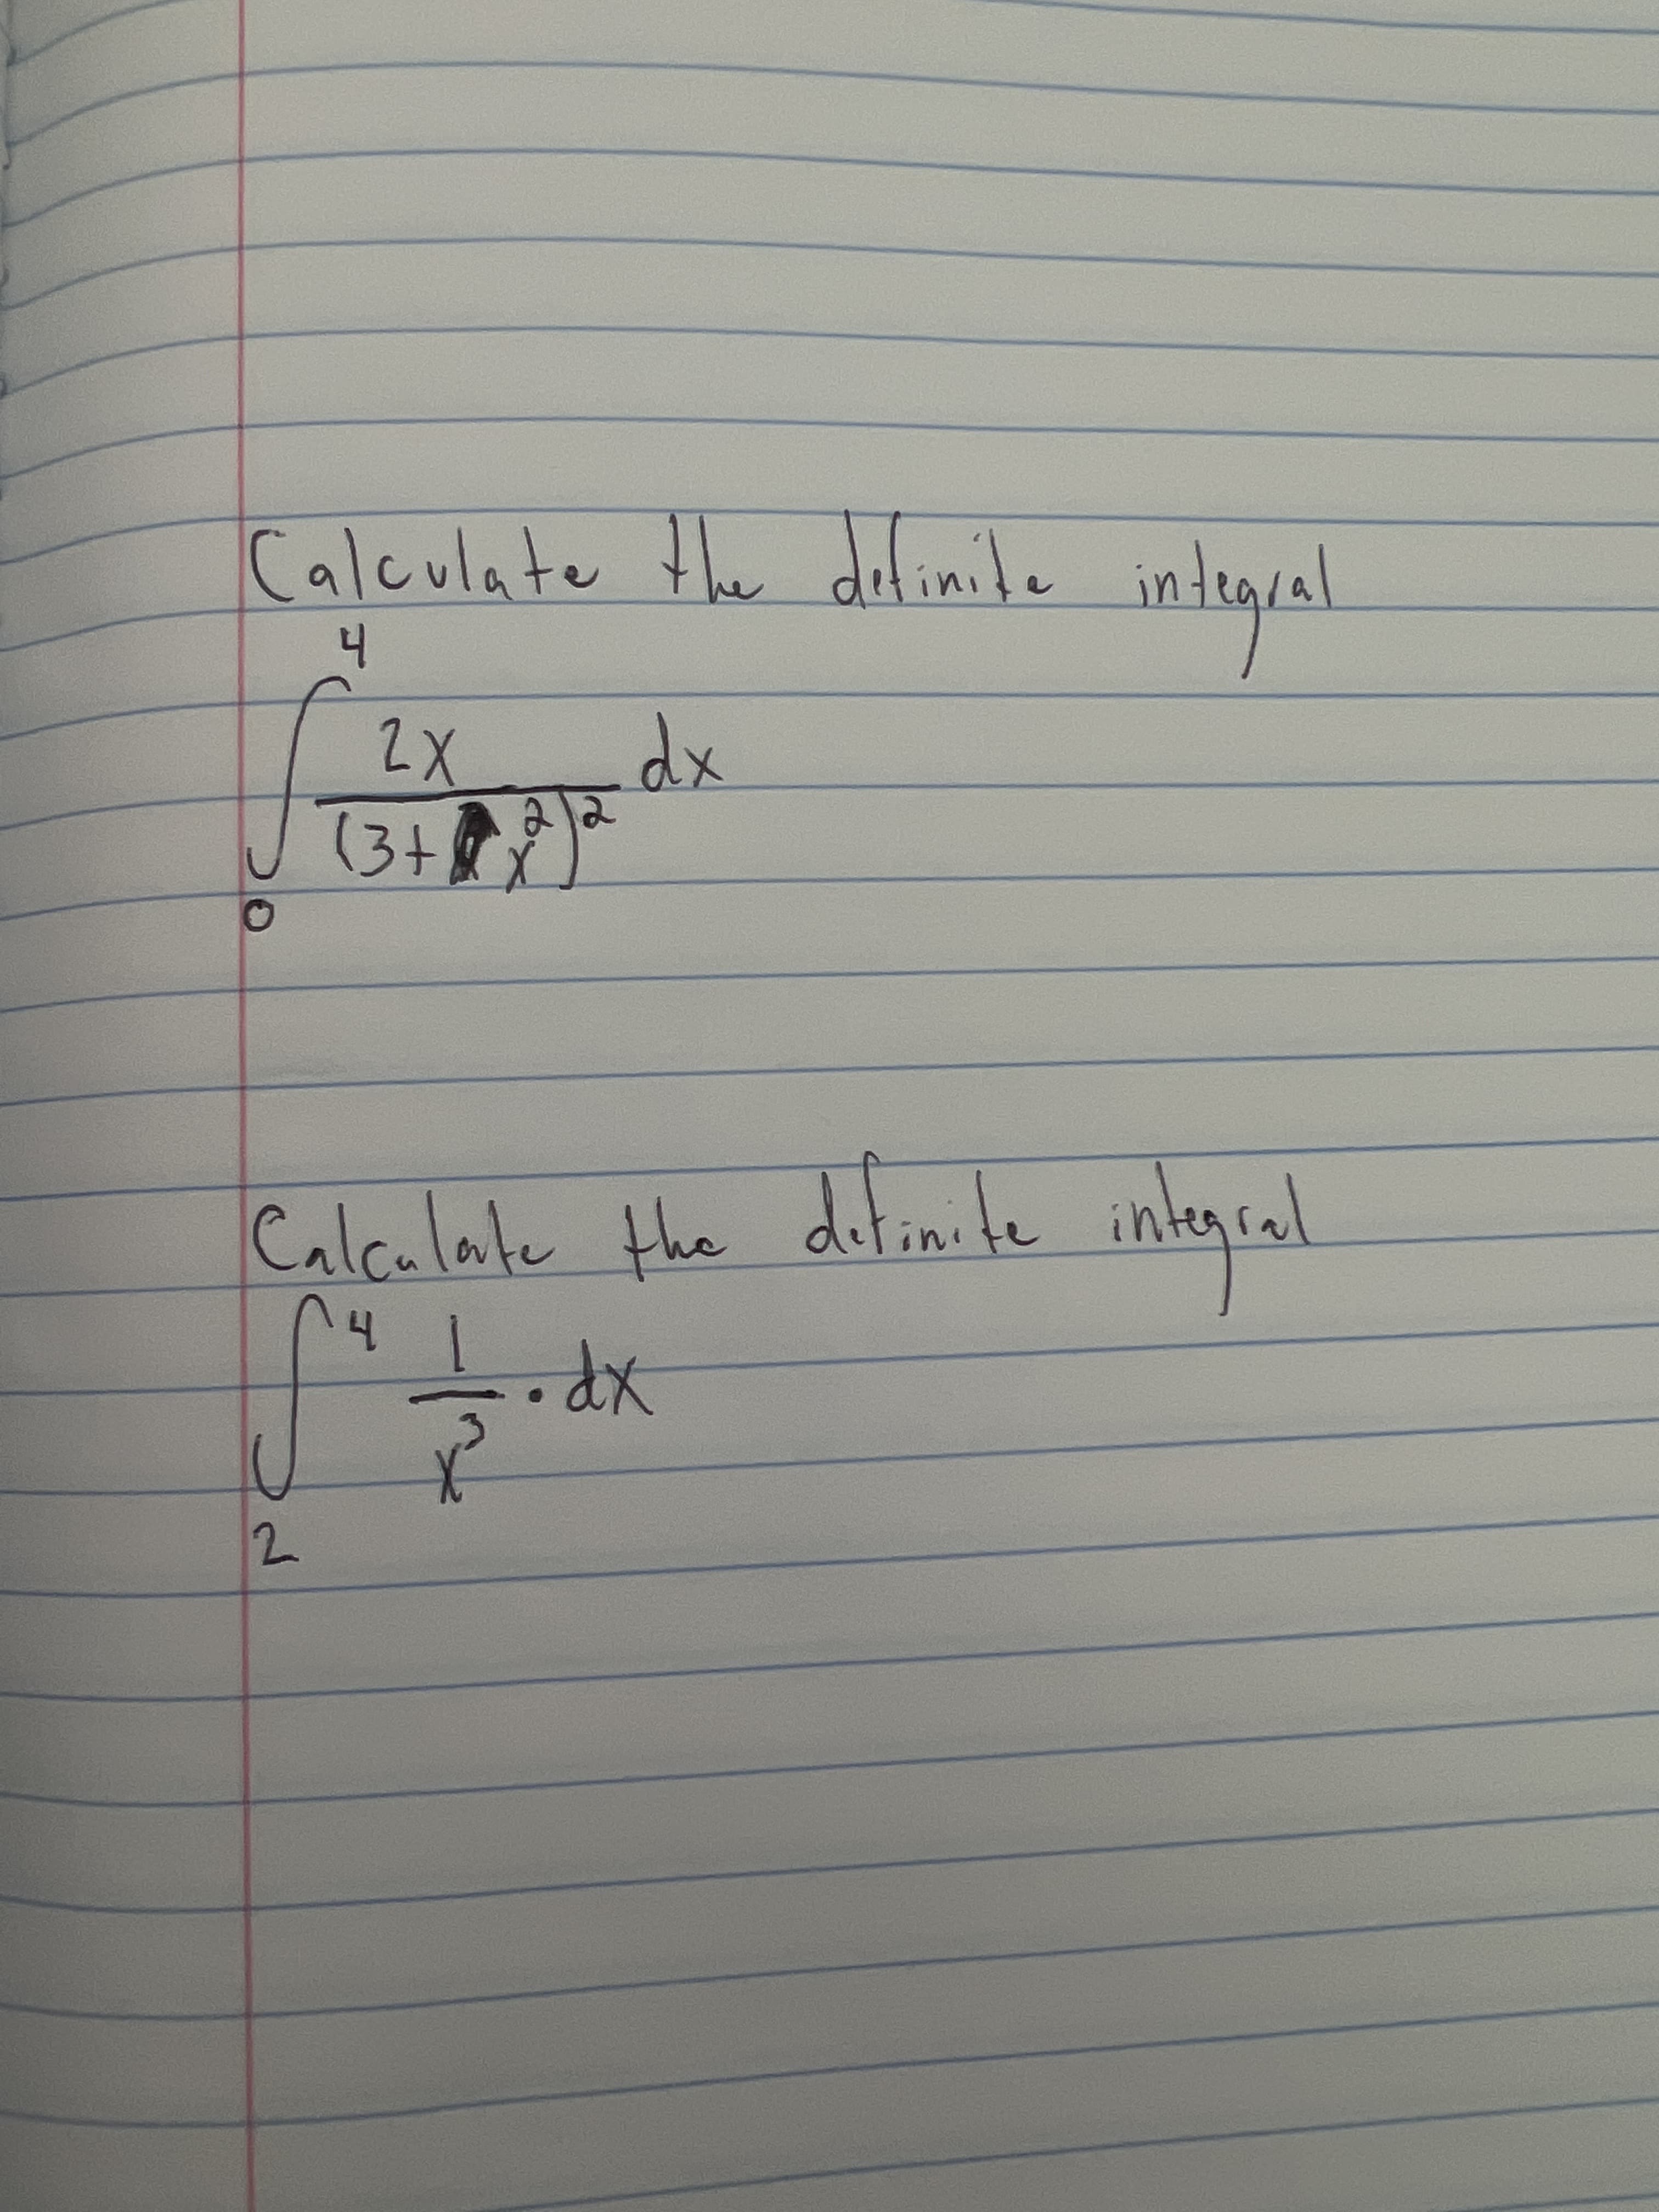 Calculate the definile inte
2X
(3+
Calculate
the ditinite integcal
xp.
